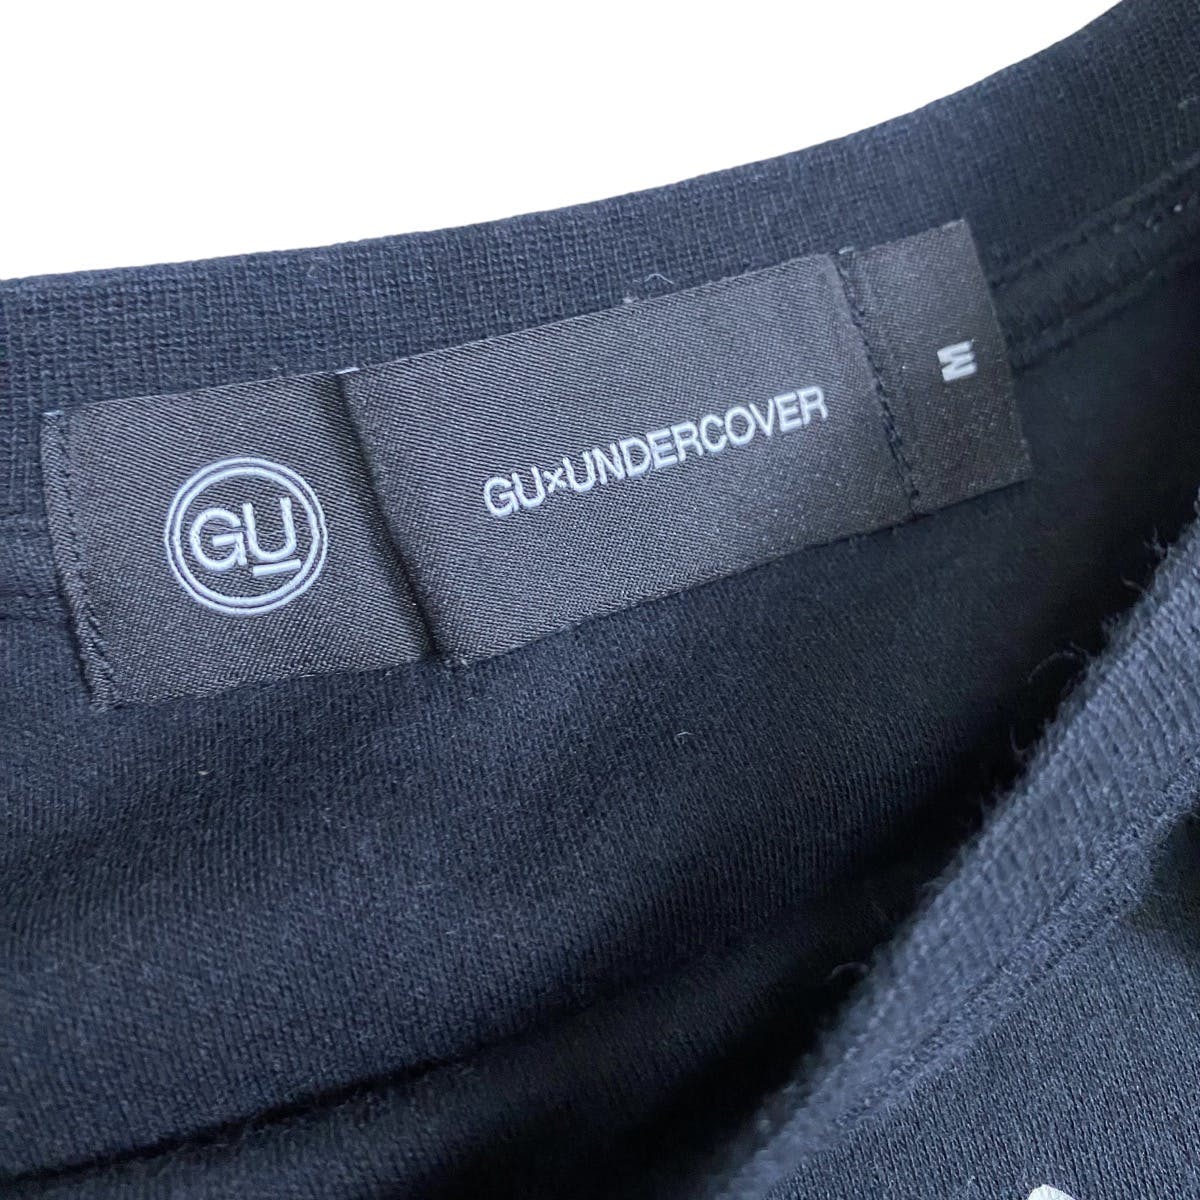 GU X Undercover maxi dress shirt - 7